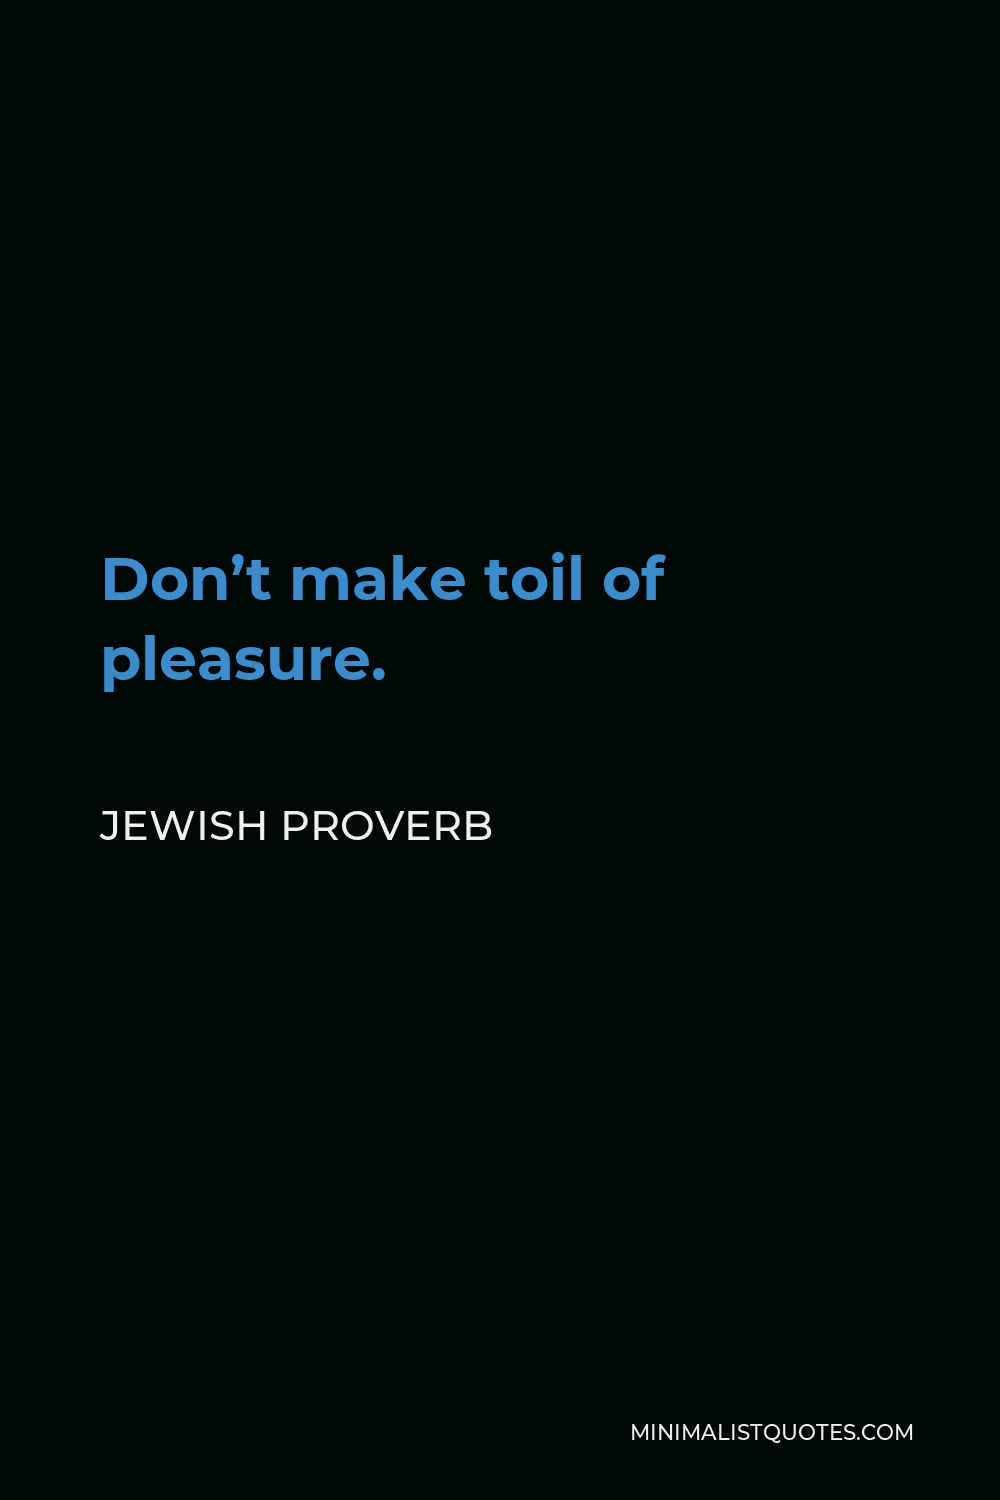 Jewish Proverb Quote - Don’t make toil of pleasure.